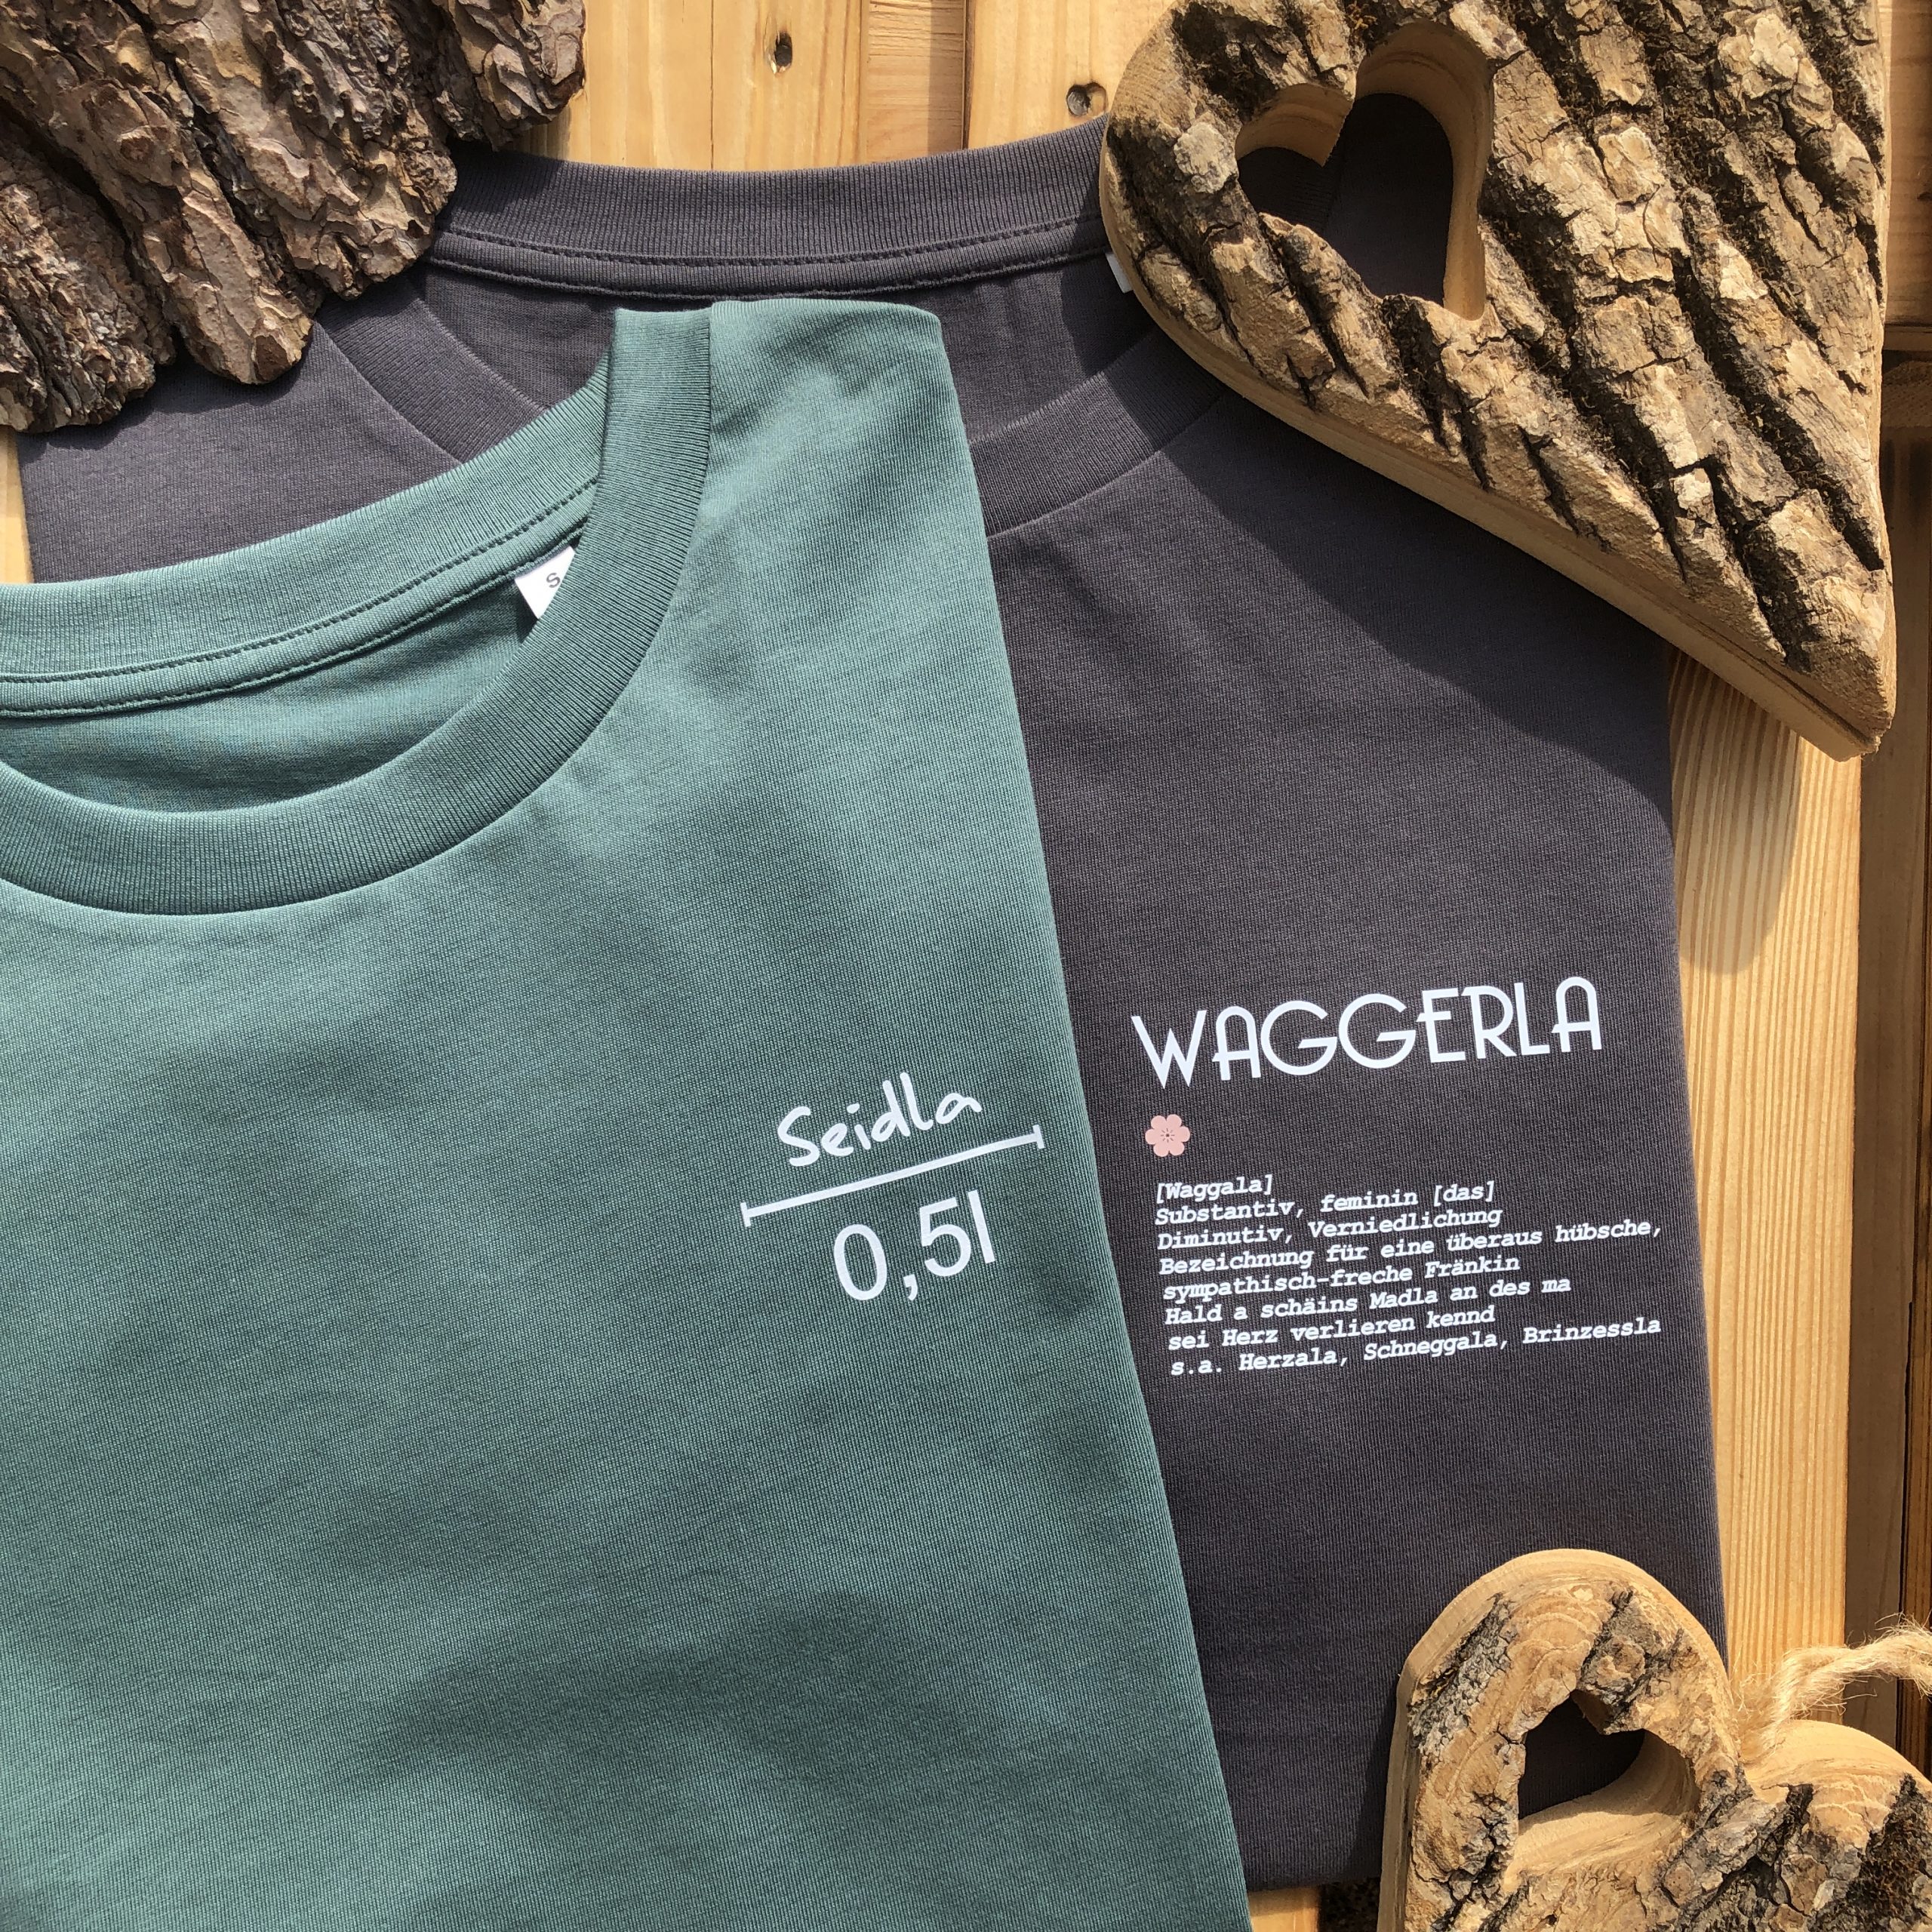 Waggerla Damen Shirts Frankenstyle Franken Geschenke Shop online